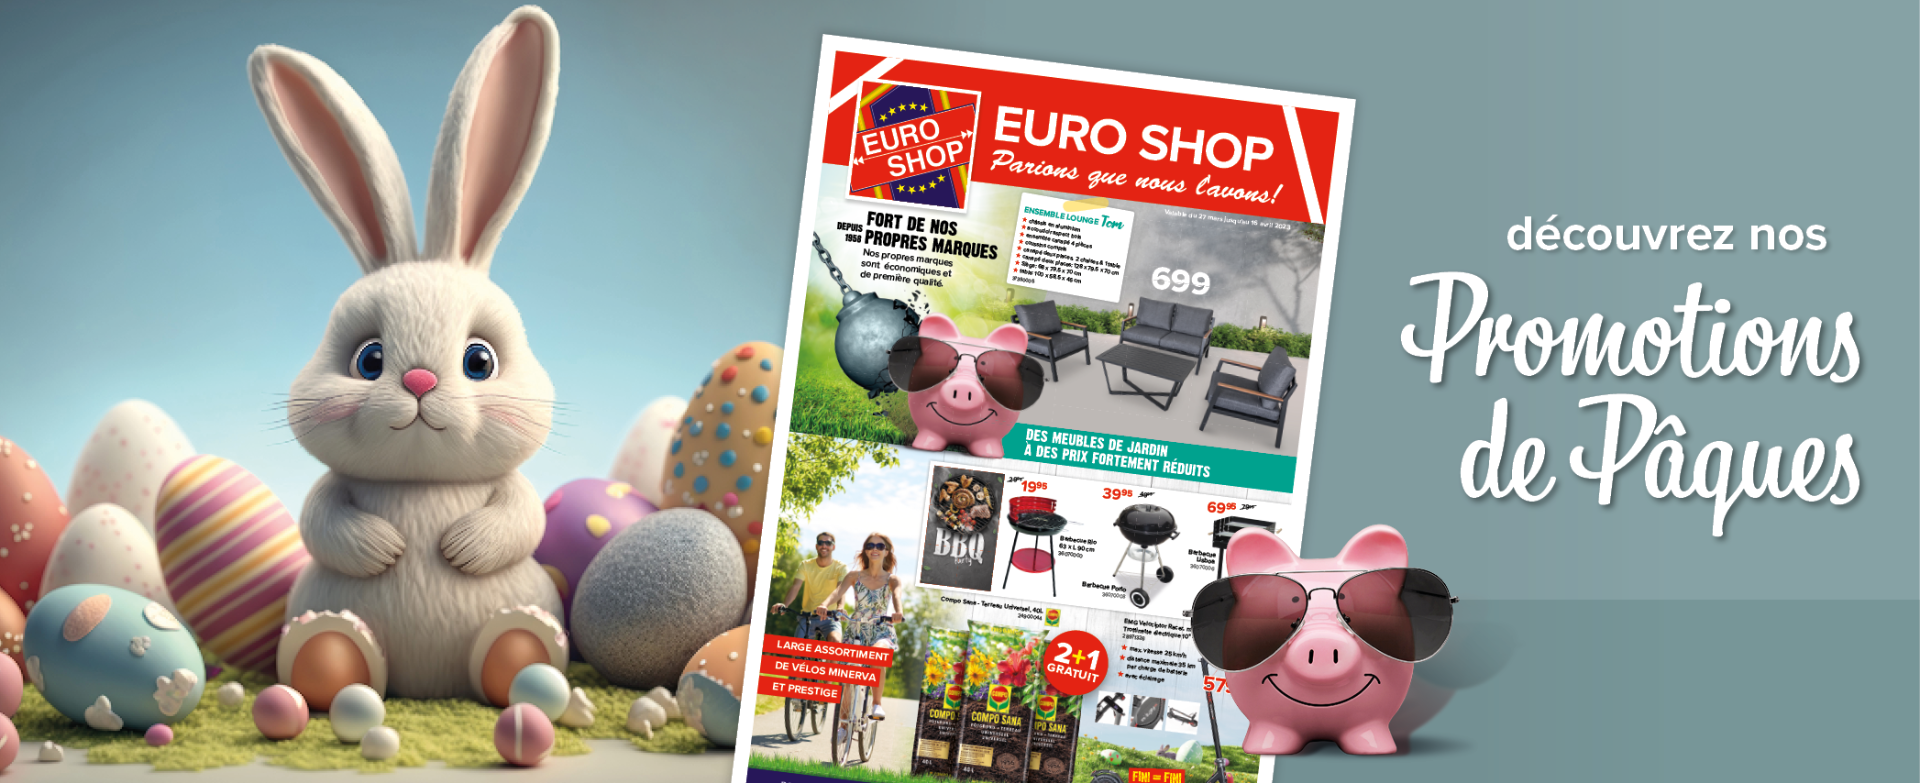 promotions - Euro Shop